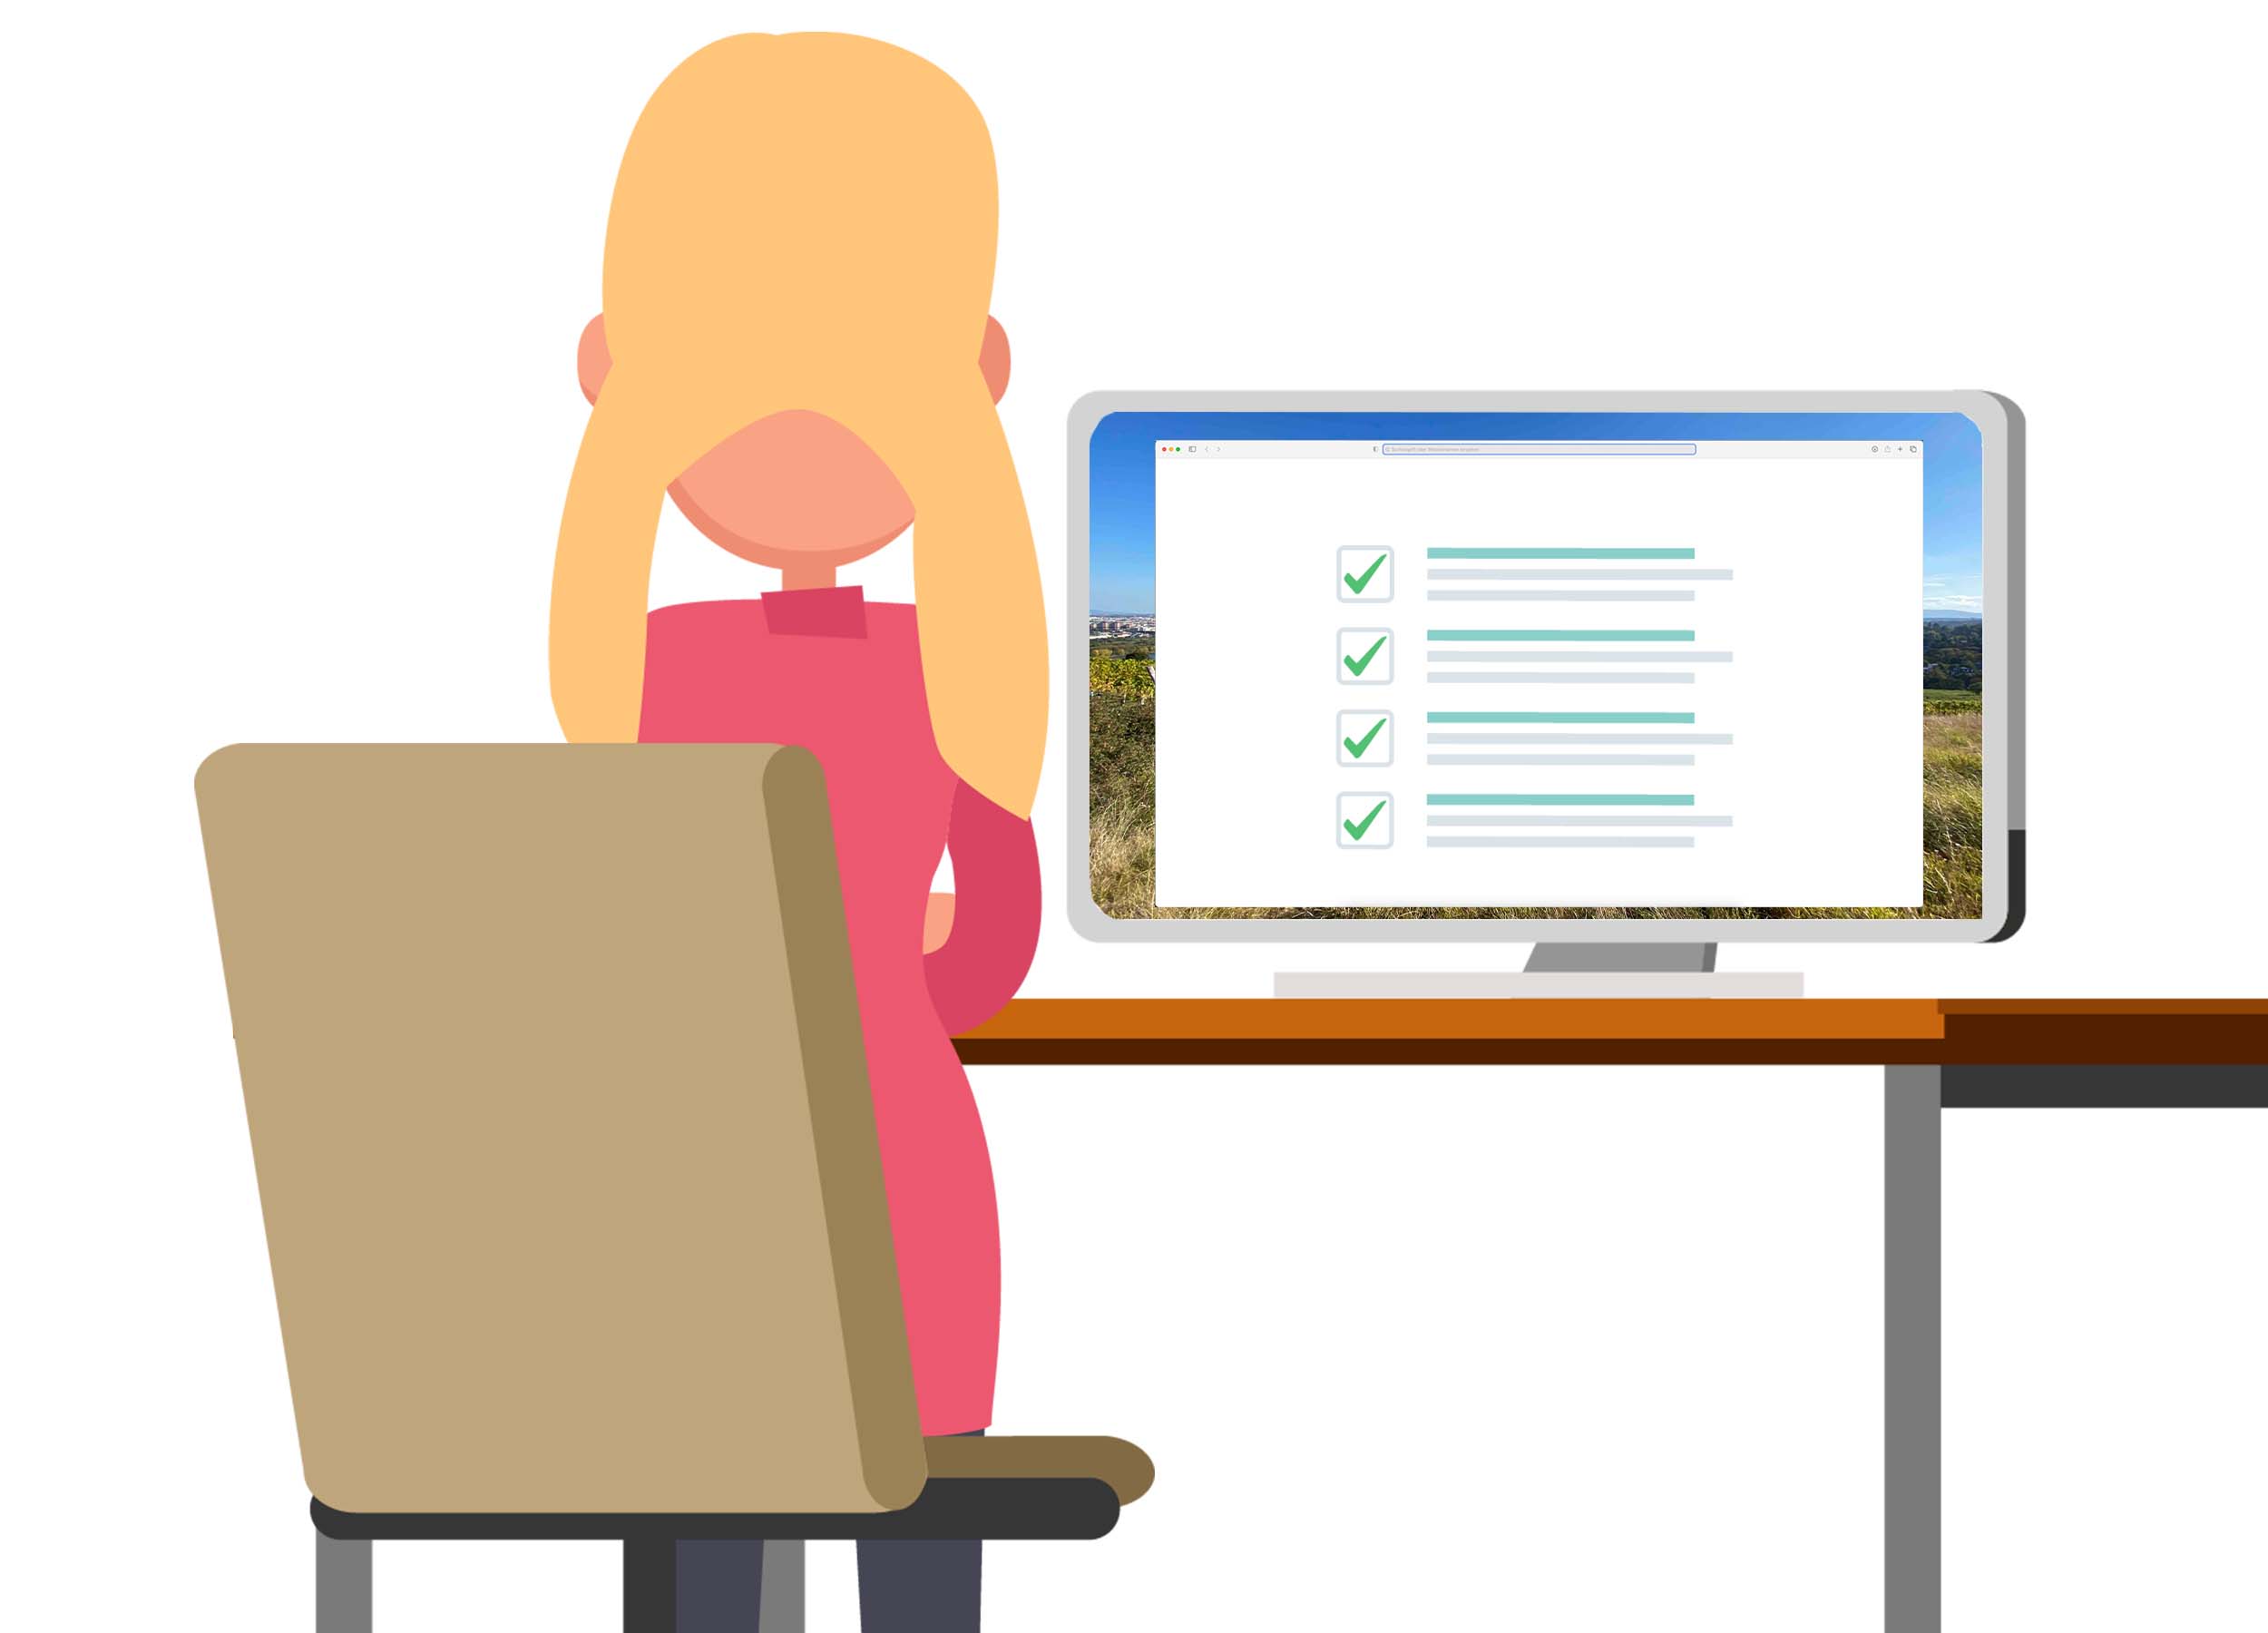 Die Illustration zeigt ein blondes Mädchen im pinken Kleid von hinten auf einem Stuhl. Sie sitzt an einem Tisch mit einem Computer. Auf dem Bildschirm ist ein Formular mit angehakten Checkboxen zu sehen. 